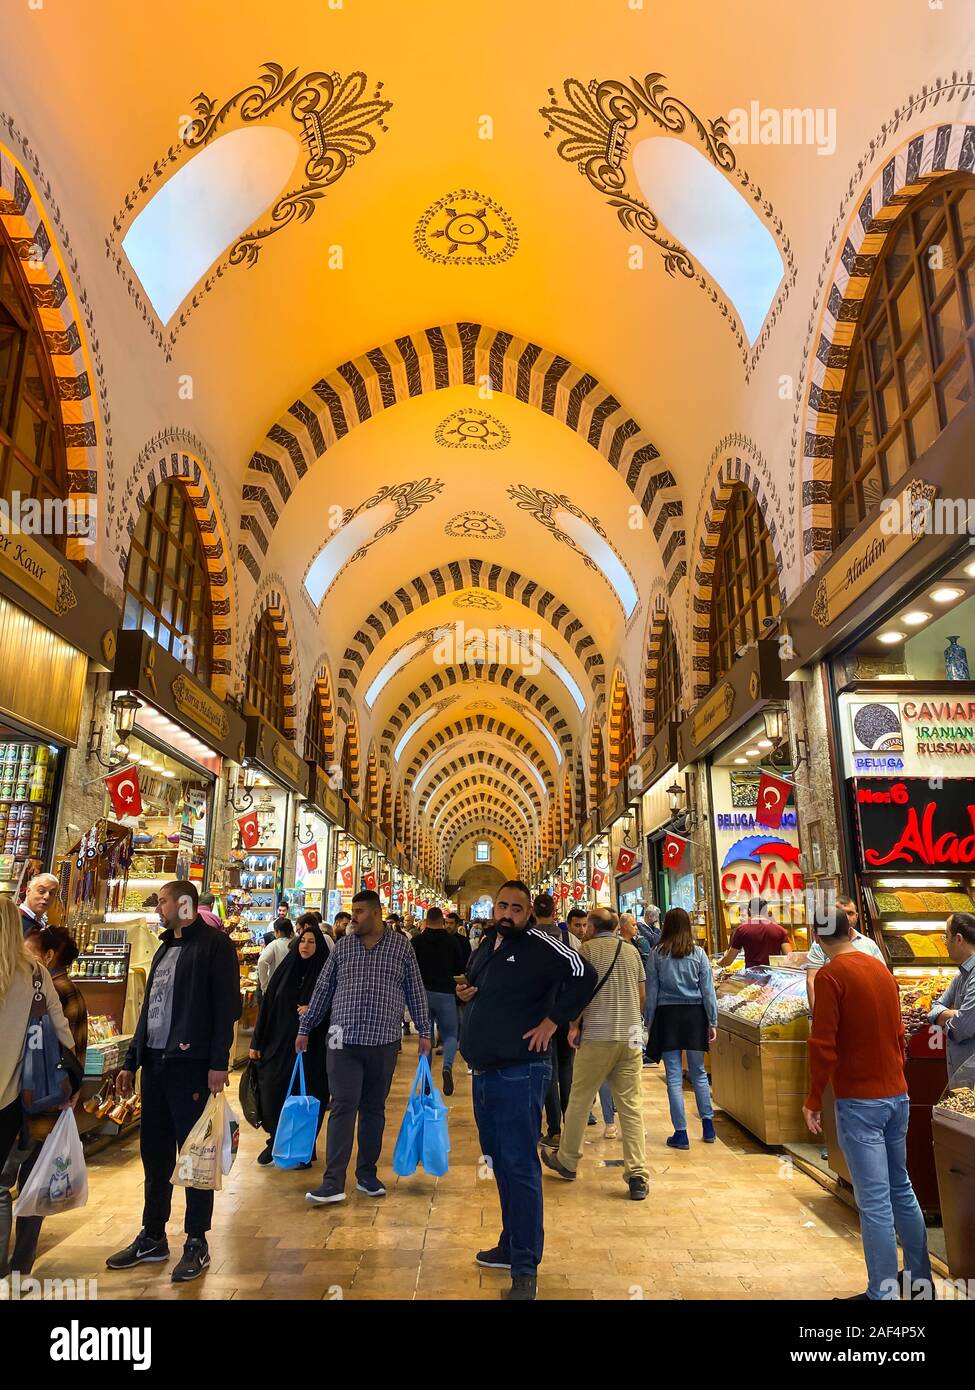 Bazar Egyptien, Istanbul, Turquie, le 28 octobre 2019. Les gens sont sur le Bazar Egyptien. Marché aux épices. Le Grand Bazar d'Istanbul. Les gens et les touristes Banque D'Images